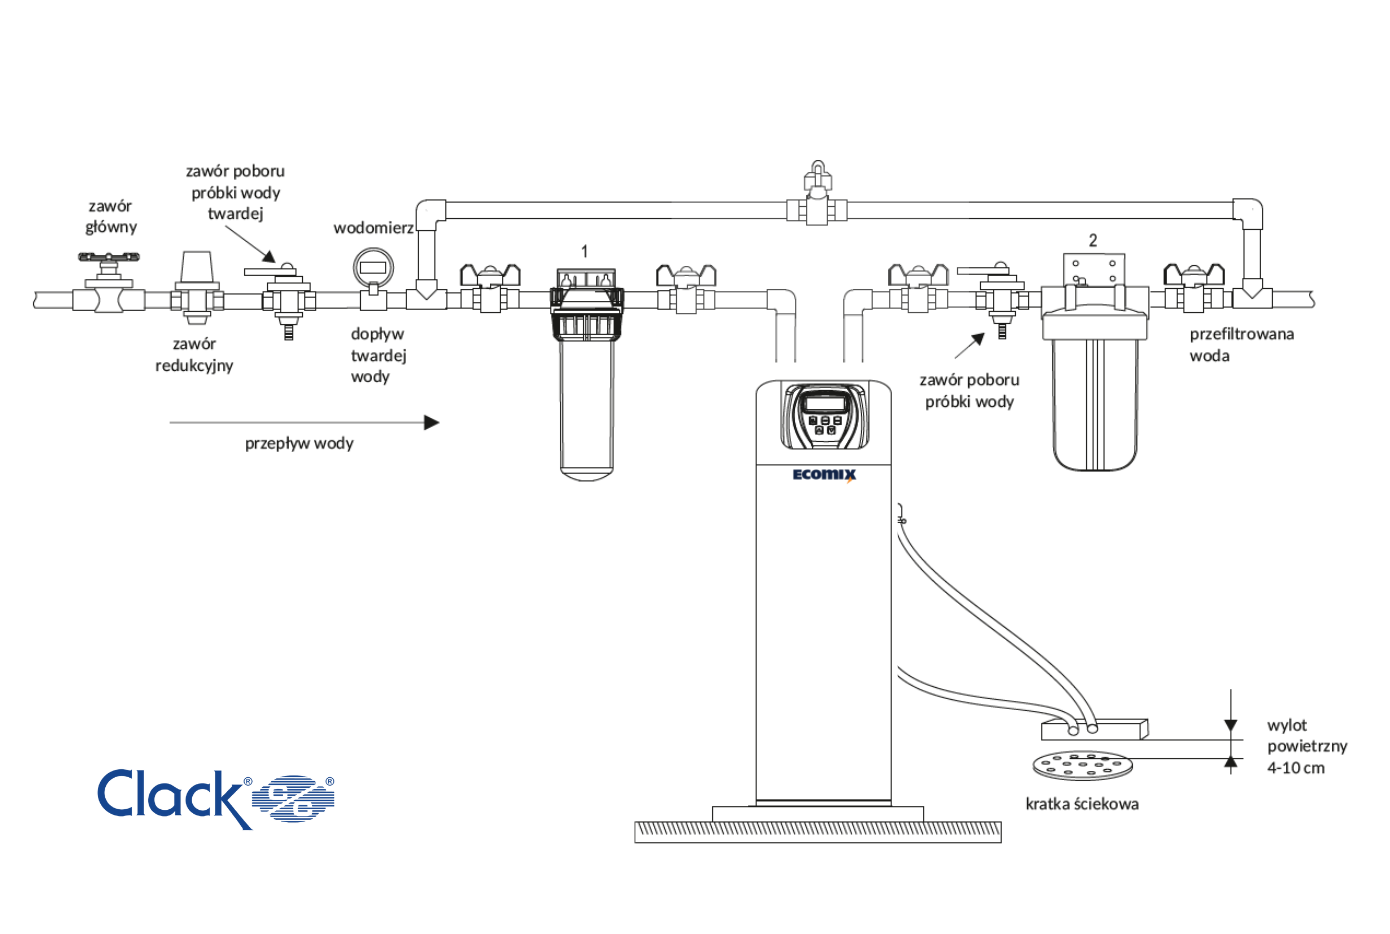 schemat montażu stacji uzdatniania wody Clack ws1ci ecomix a. Filtr wstępny, urządzenie wielofunkcyjne, filtr węglowy